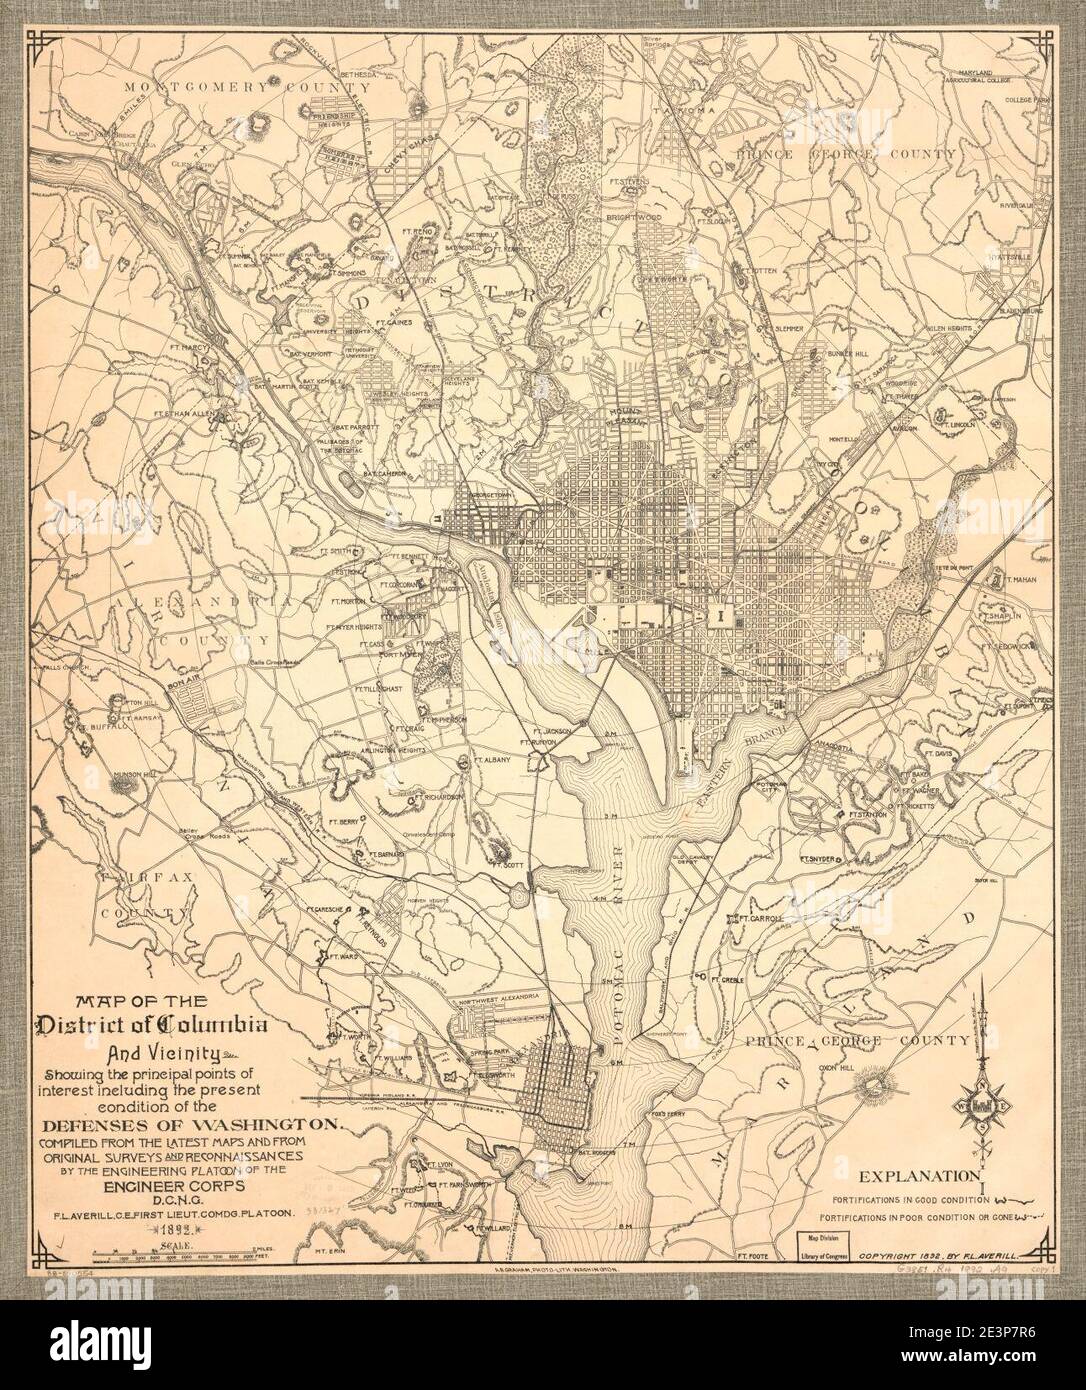 Carte du District de Columbia et des environs montrant le principaux points d'intérêt, y compris la condition actuelle du Les défenses de Washington Banque D'Images